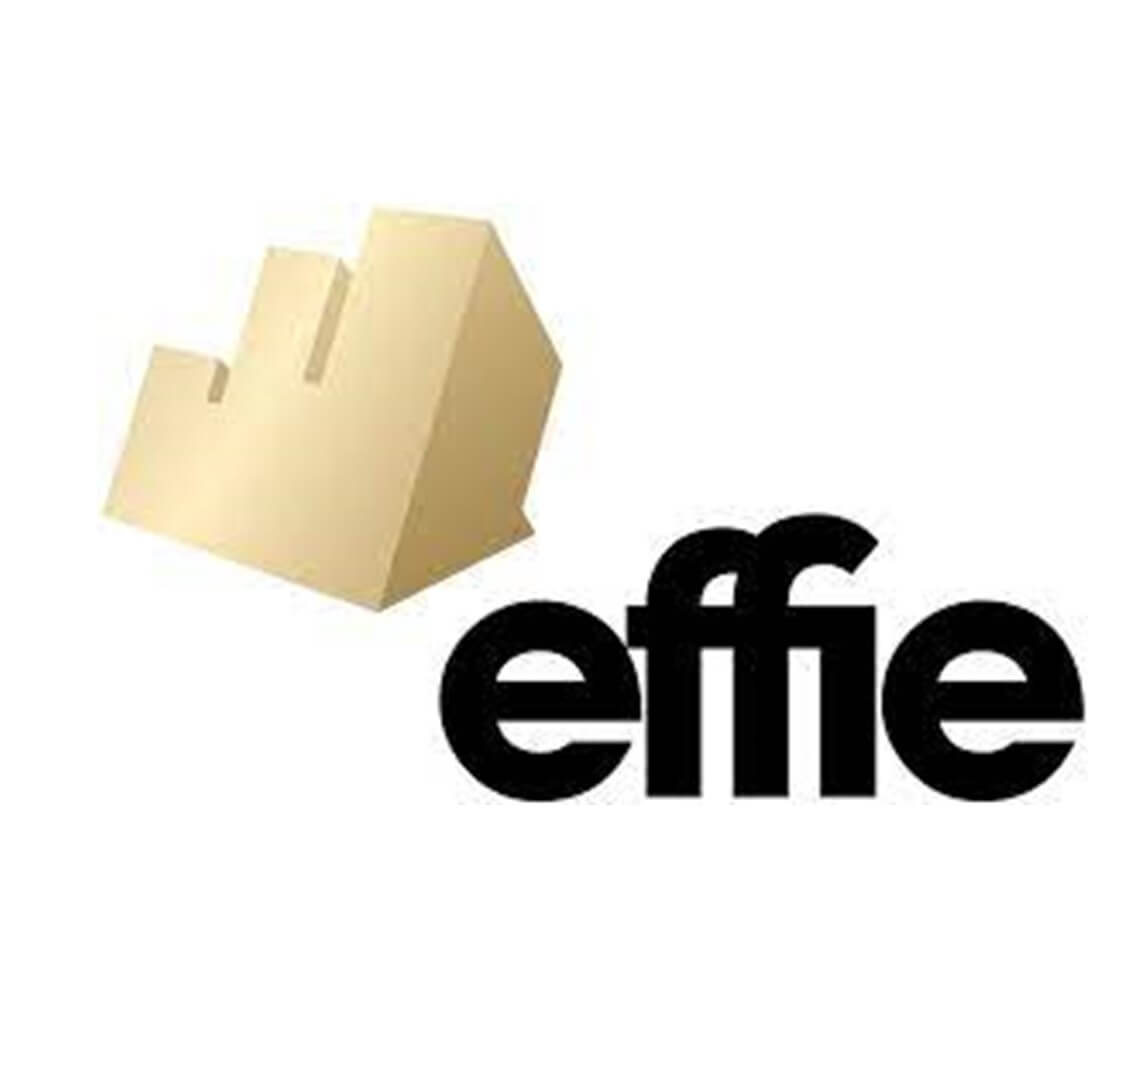 Logotipo dos prémios Effie